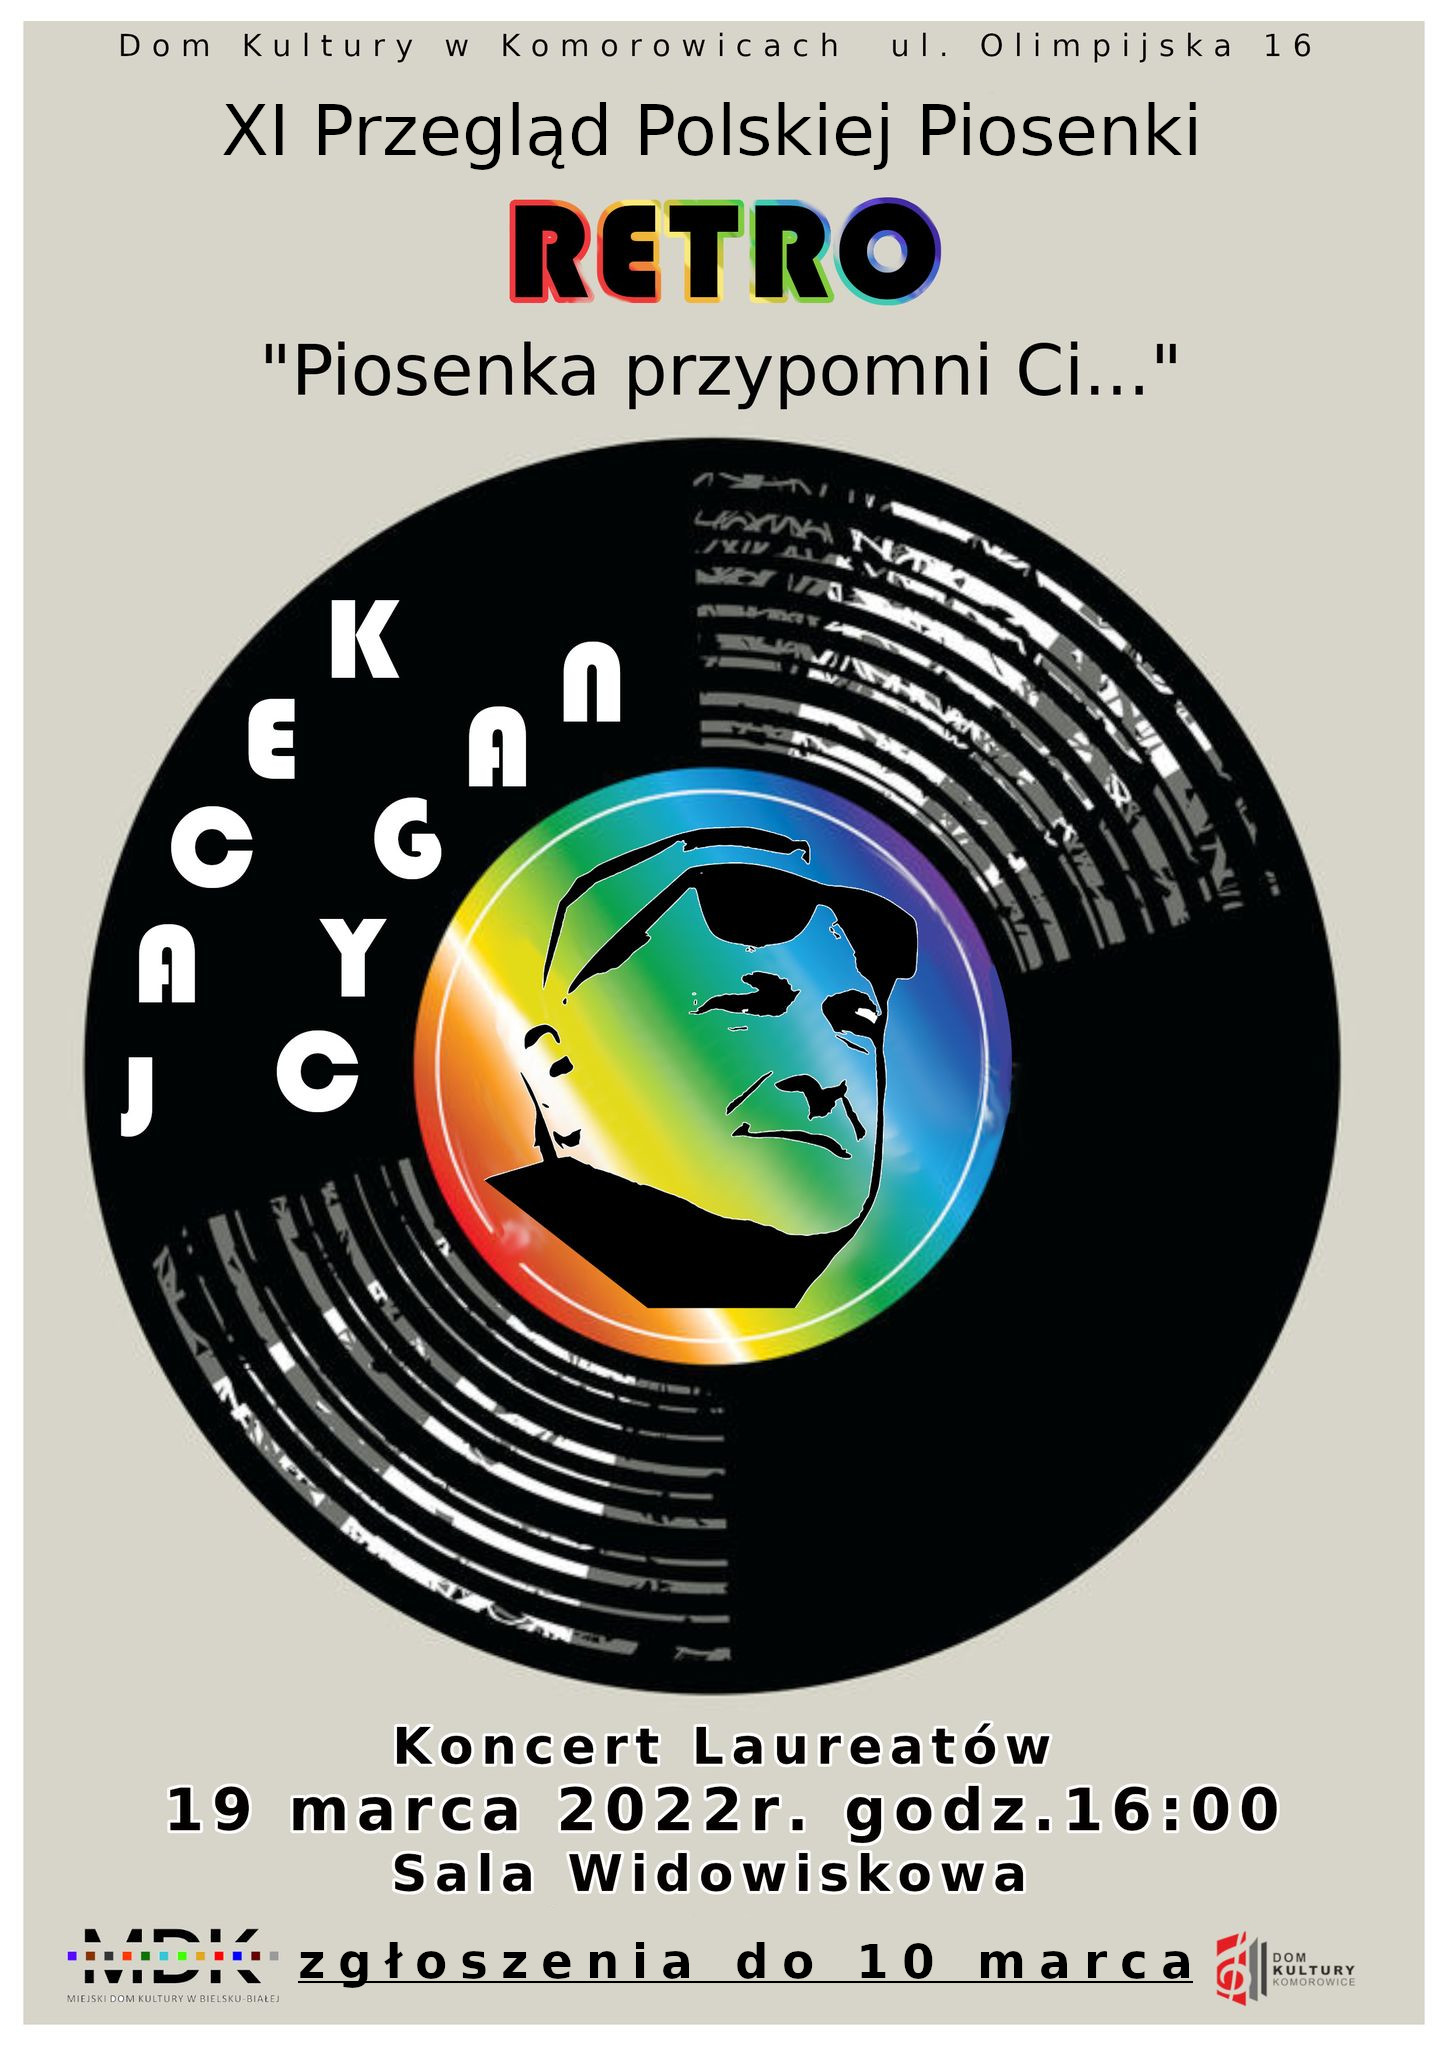  11. Przegląd Polskiej Piosenki Retro - Piosenka przypomni Ci... Na zdjęciu plakat konkursu